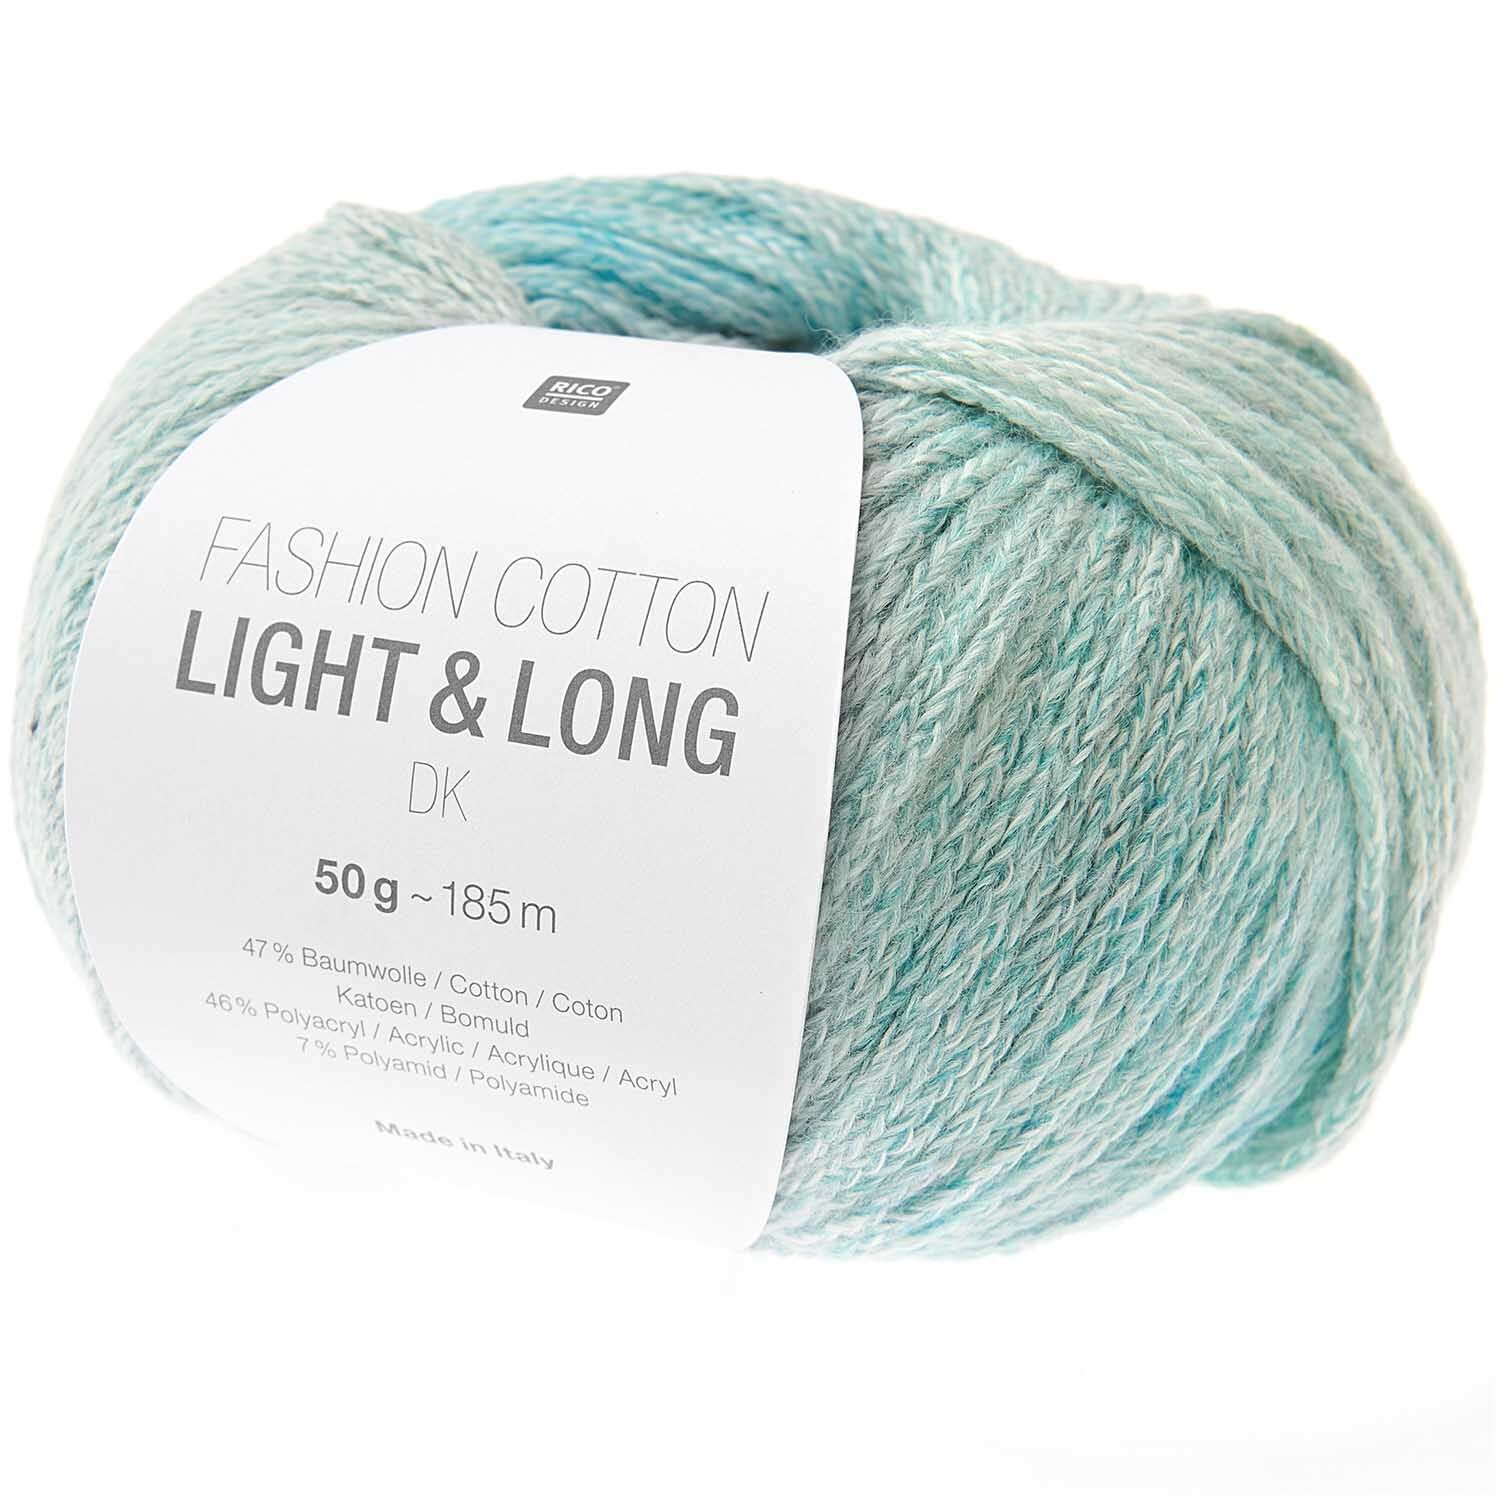 Fashion Cotton Light & Long dk